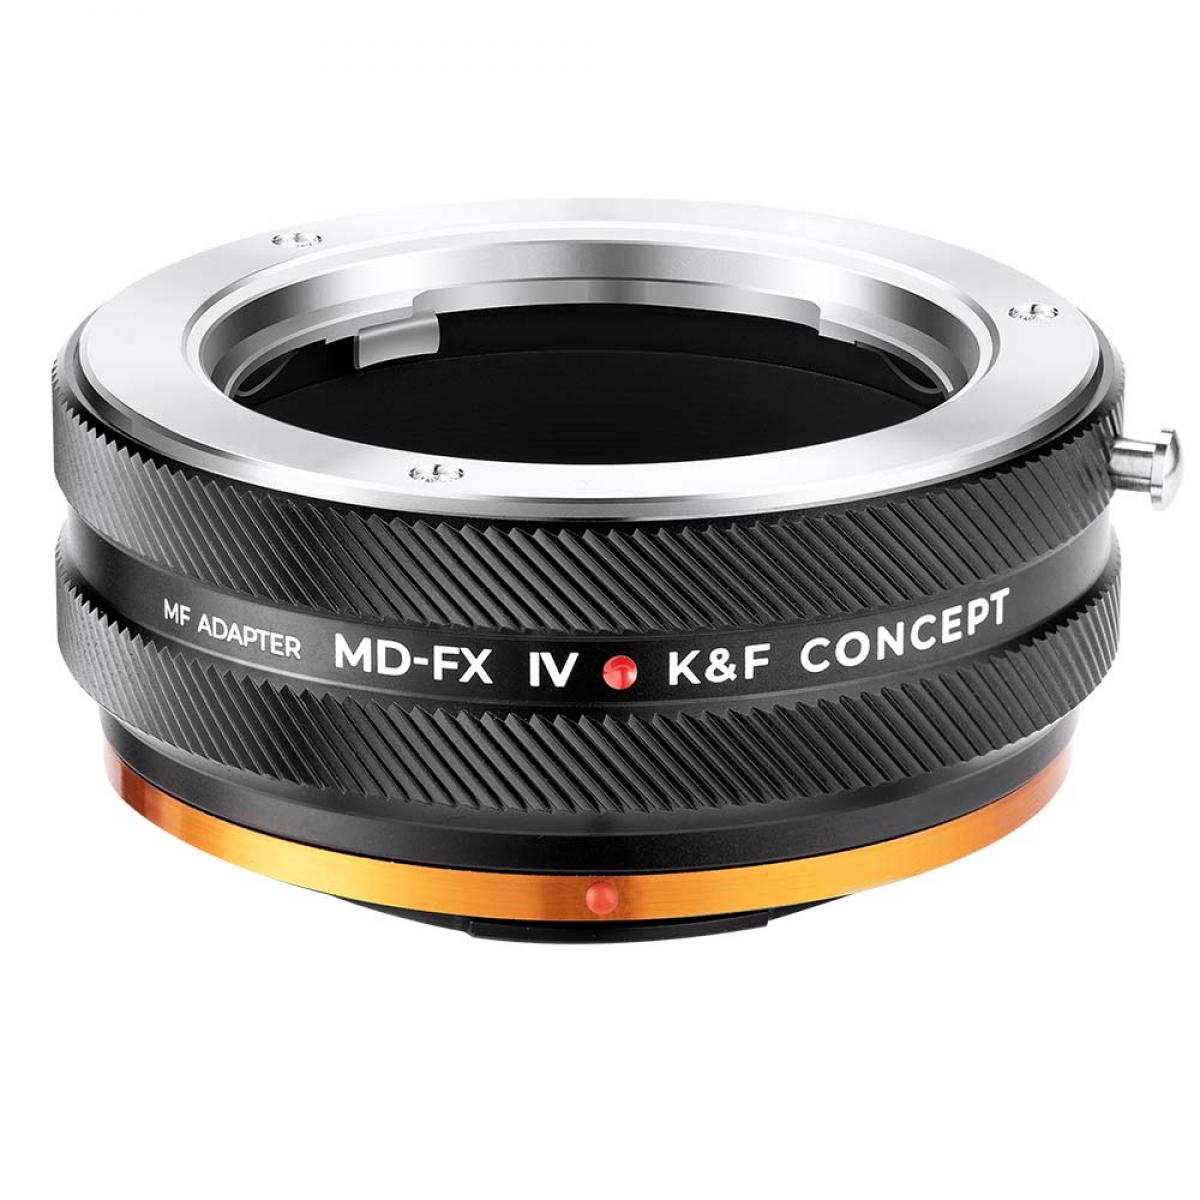 K&F Concept ミノルタ (SR / MD / MC) レンズマウント - Fuji X  カメラボディアダプターリング、マットラッカー、MD-FX IV PRO